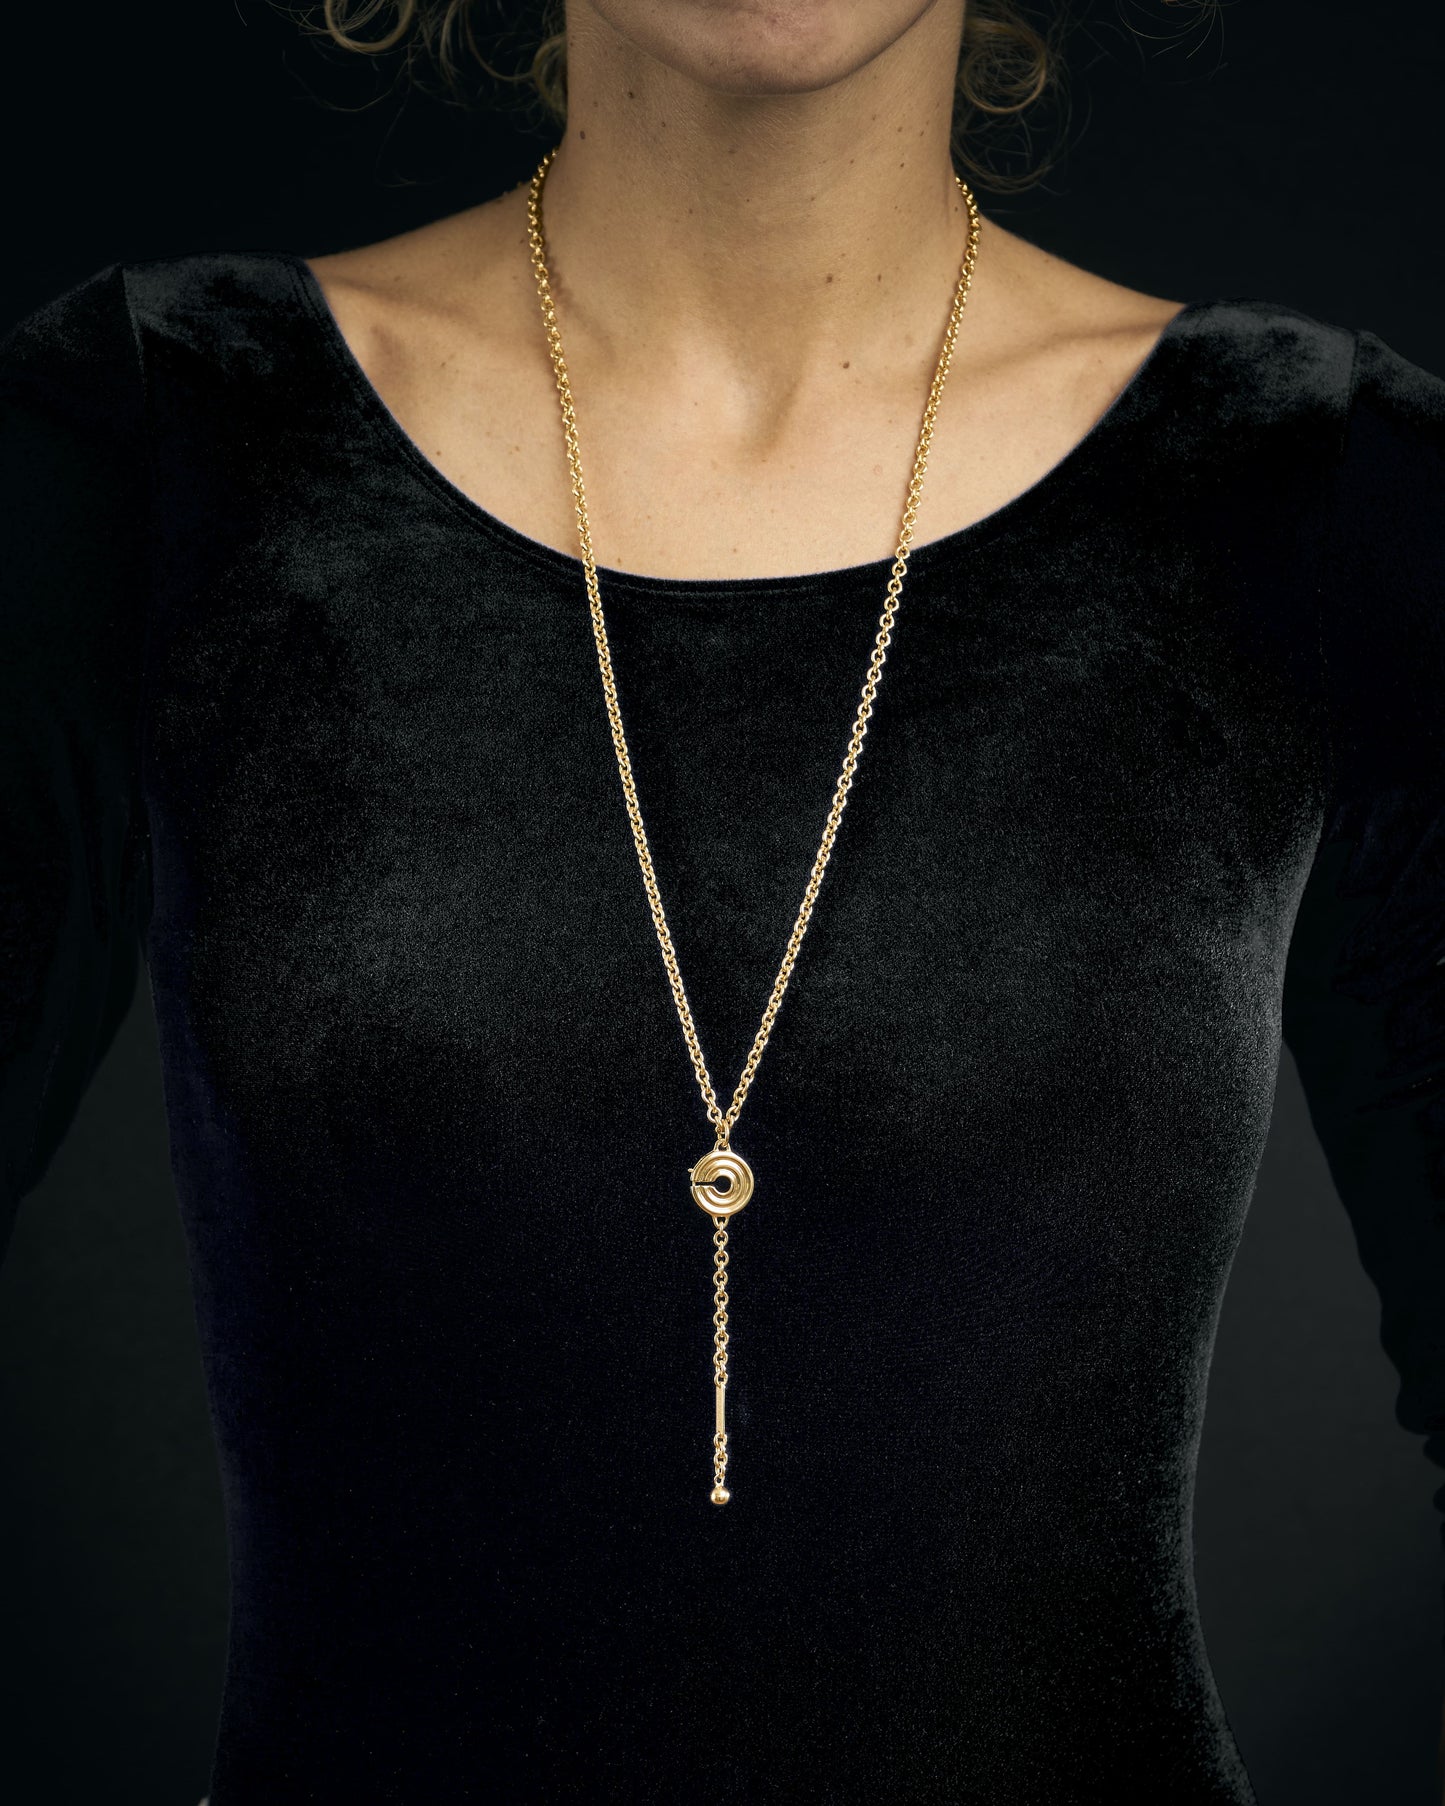 Buste de femme avec le collier Esculape en or plaqué sur argent sans une bague